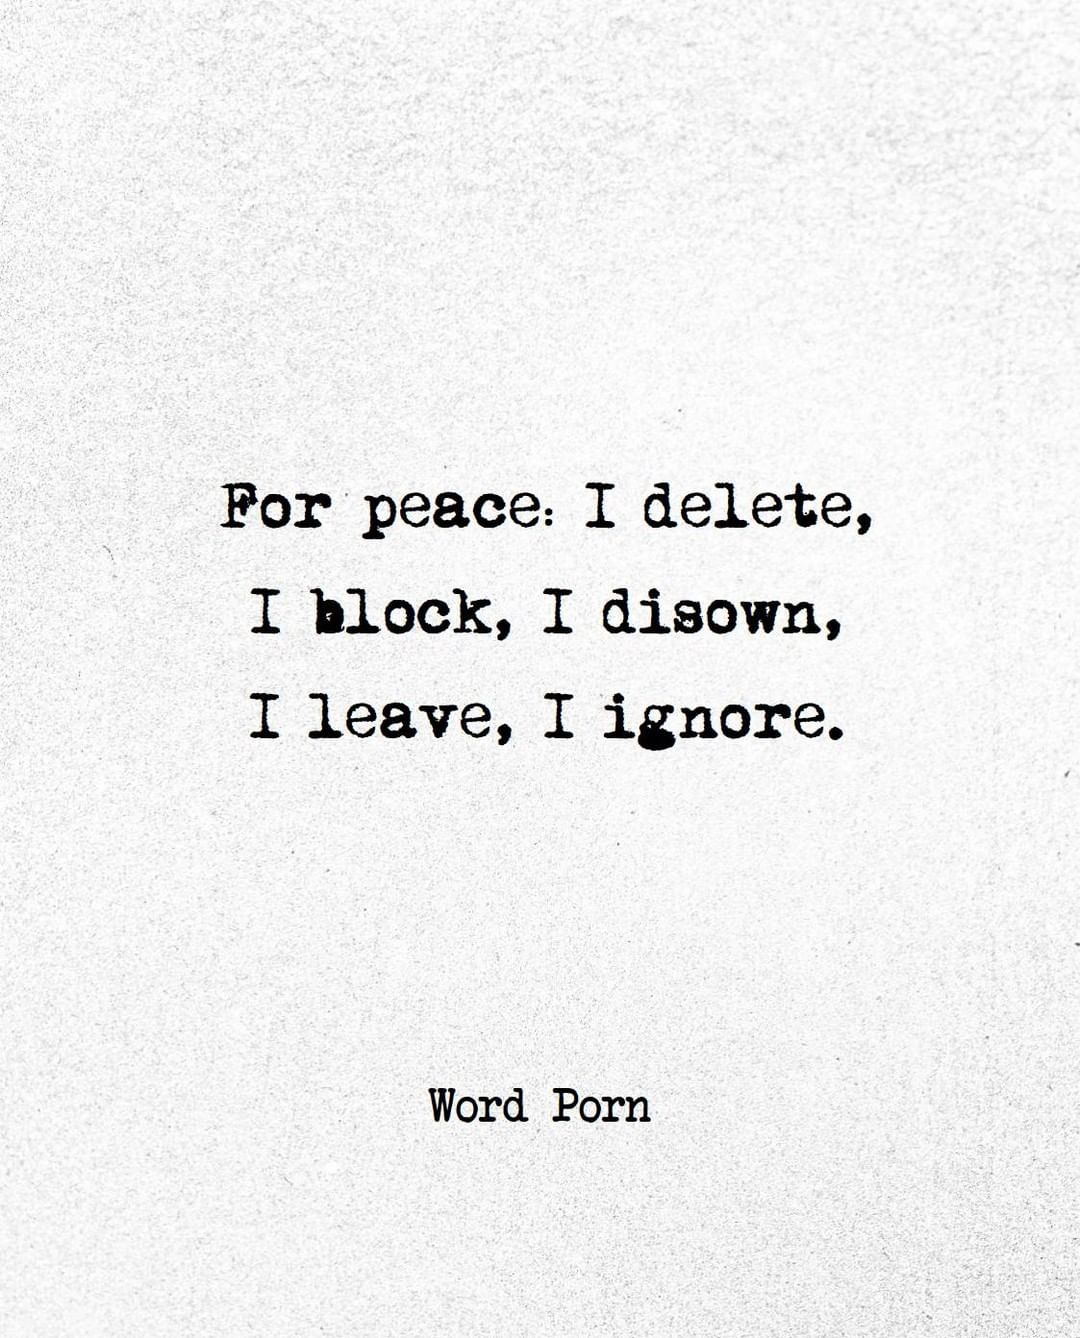 Por peace: I delete, I block, I disown, I leave, I ignore.